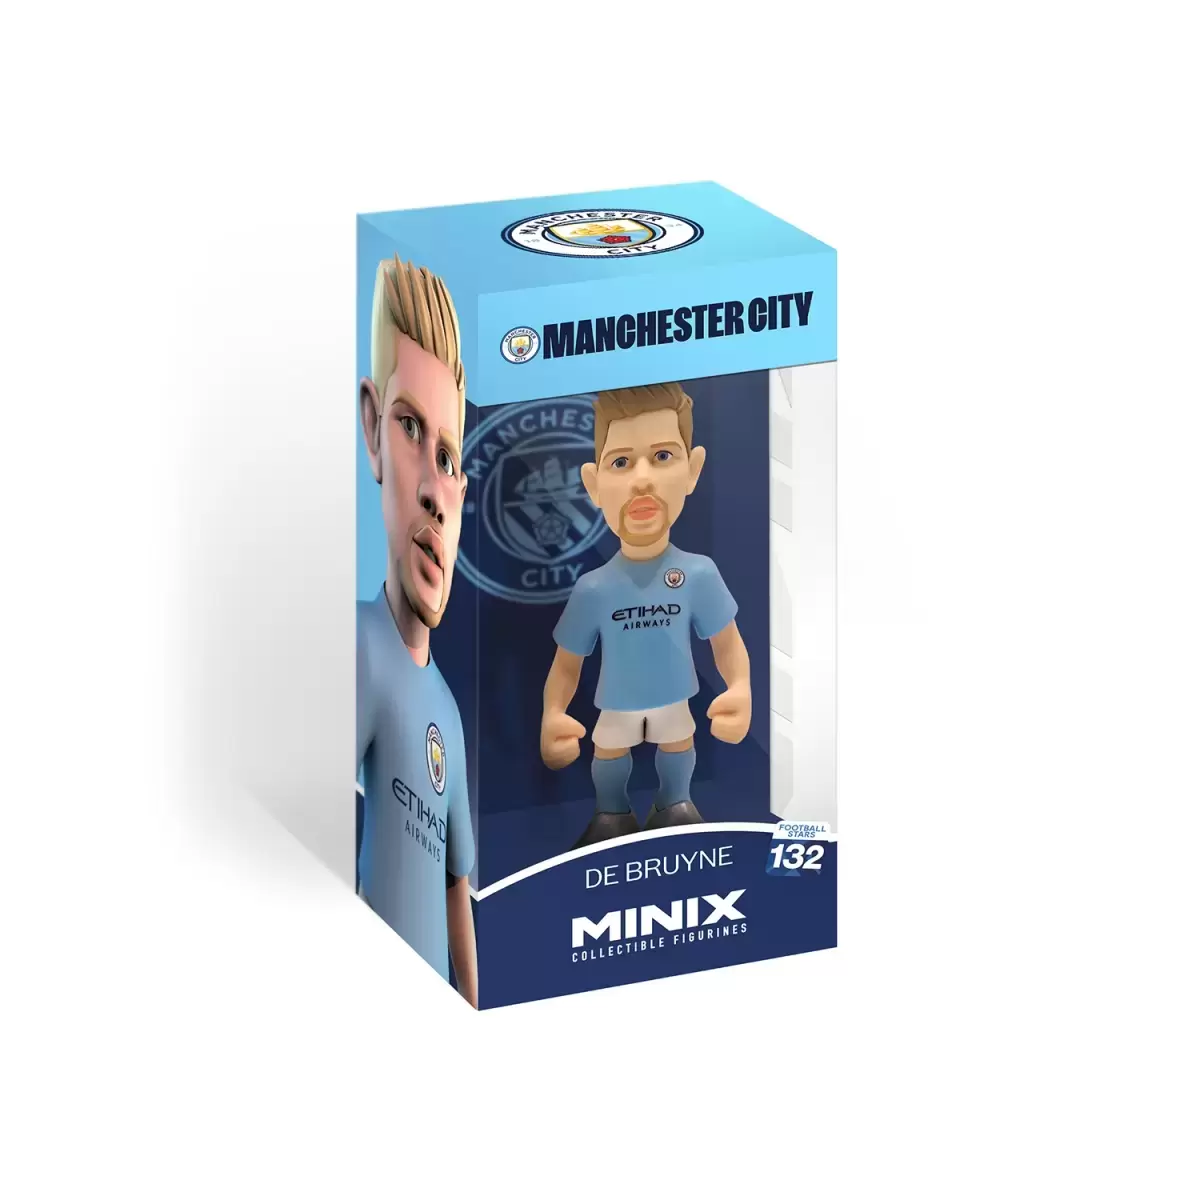 Manchester City - De Bruyne - MINIX action figure